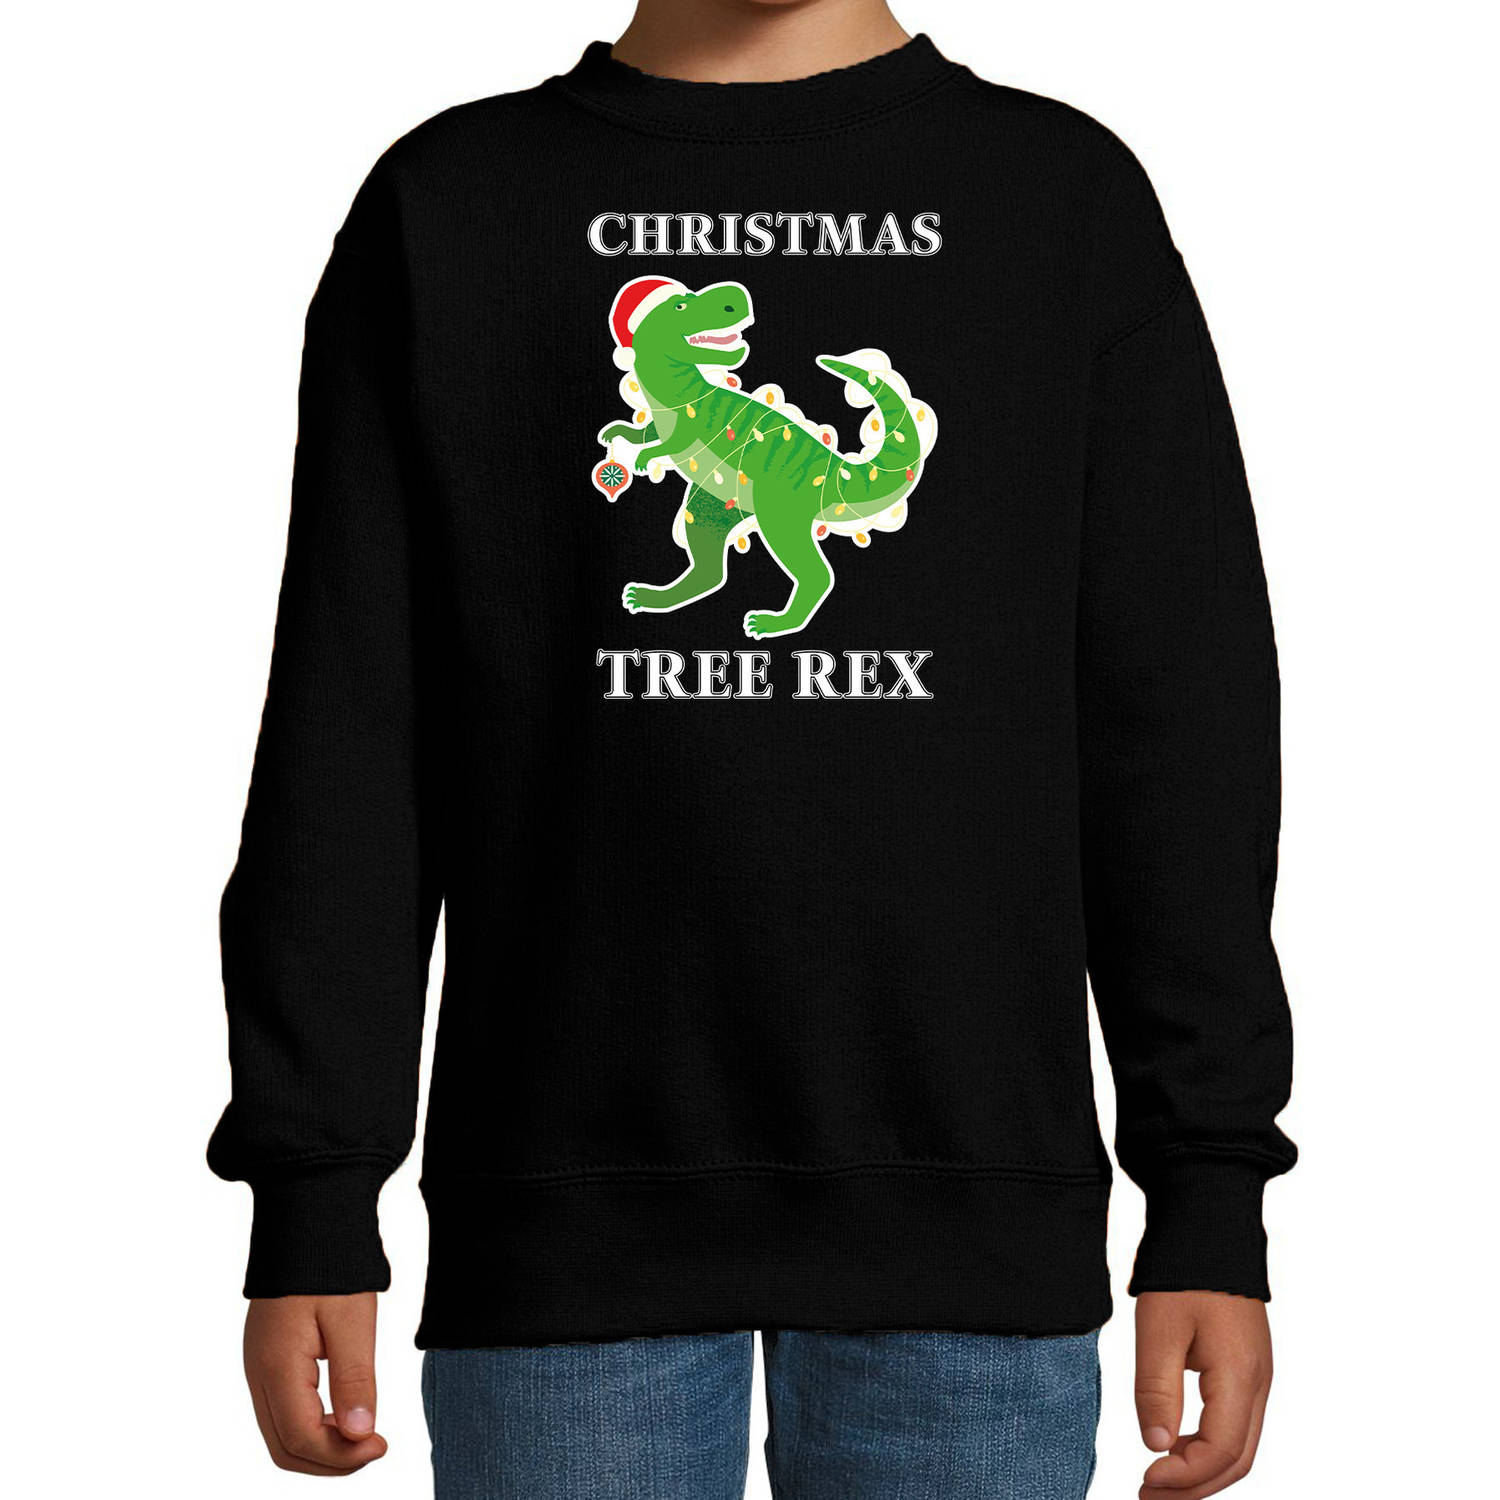 Zwarte Kersttrui / Kerstkleding Christmas tree rex voor kinderen 3-4 jaar (98/104) - kerst truien kind